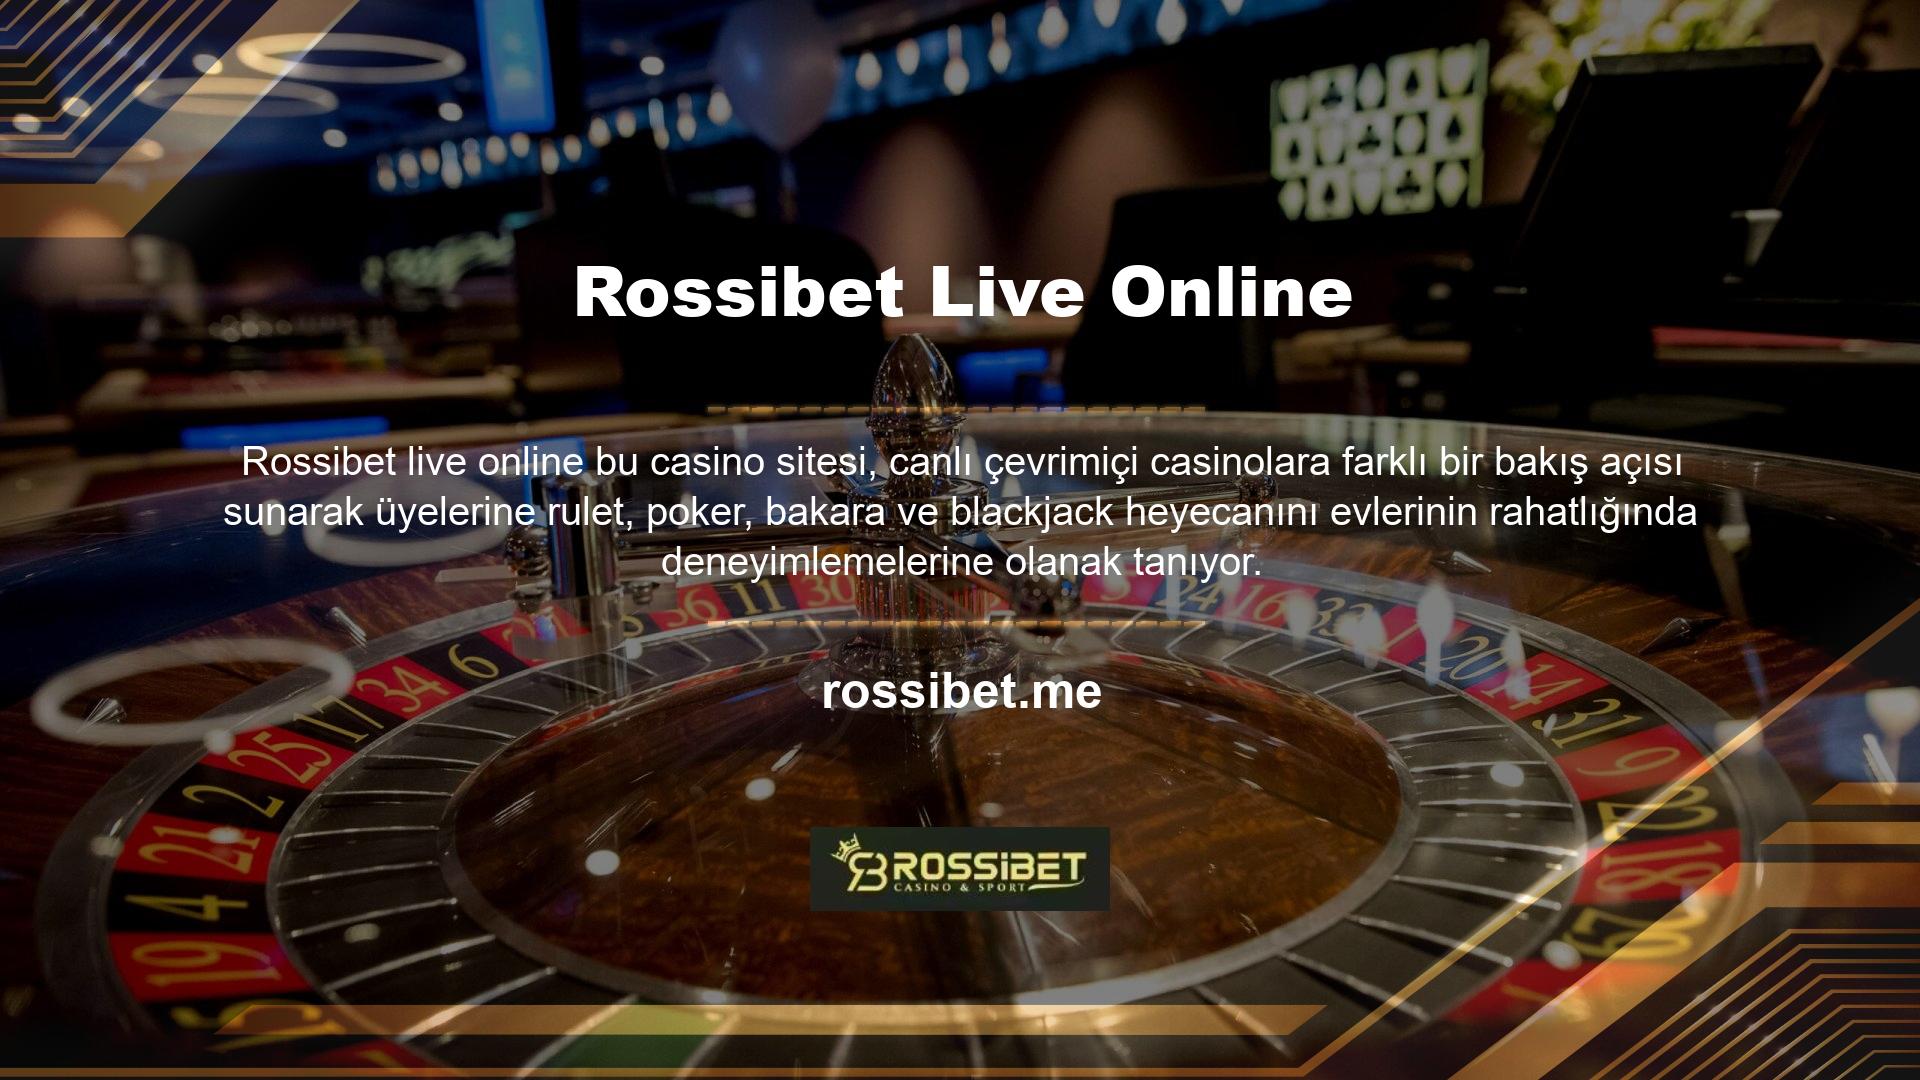 Rossibet mobil uygulaması da dahil olmak üzere canlı bahis sitelerinin üyeleri, herhangi bir yazılım yüklemeye veya Türkçe konuşan bir bayi seçmeye gerek kalmadan gerçek oyuncularla Rossibet canlı online casino deneyiminin keyfini çıkarabilirler